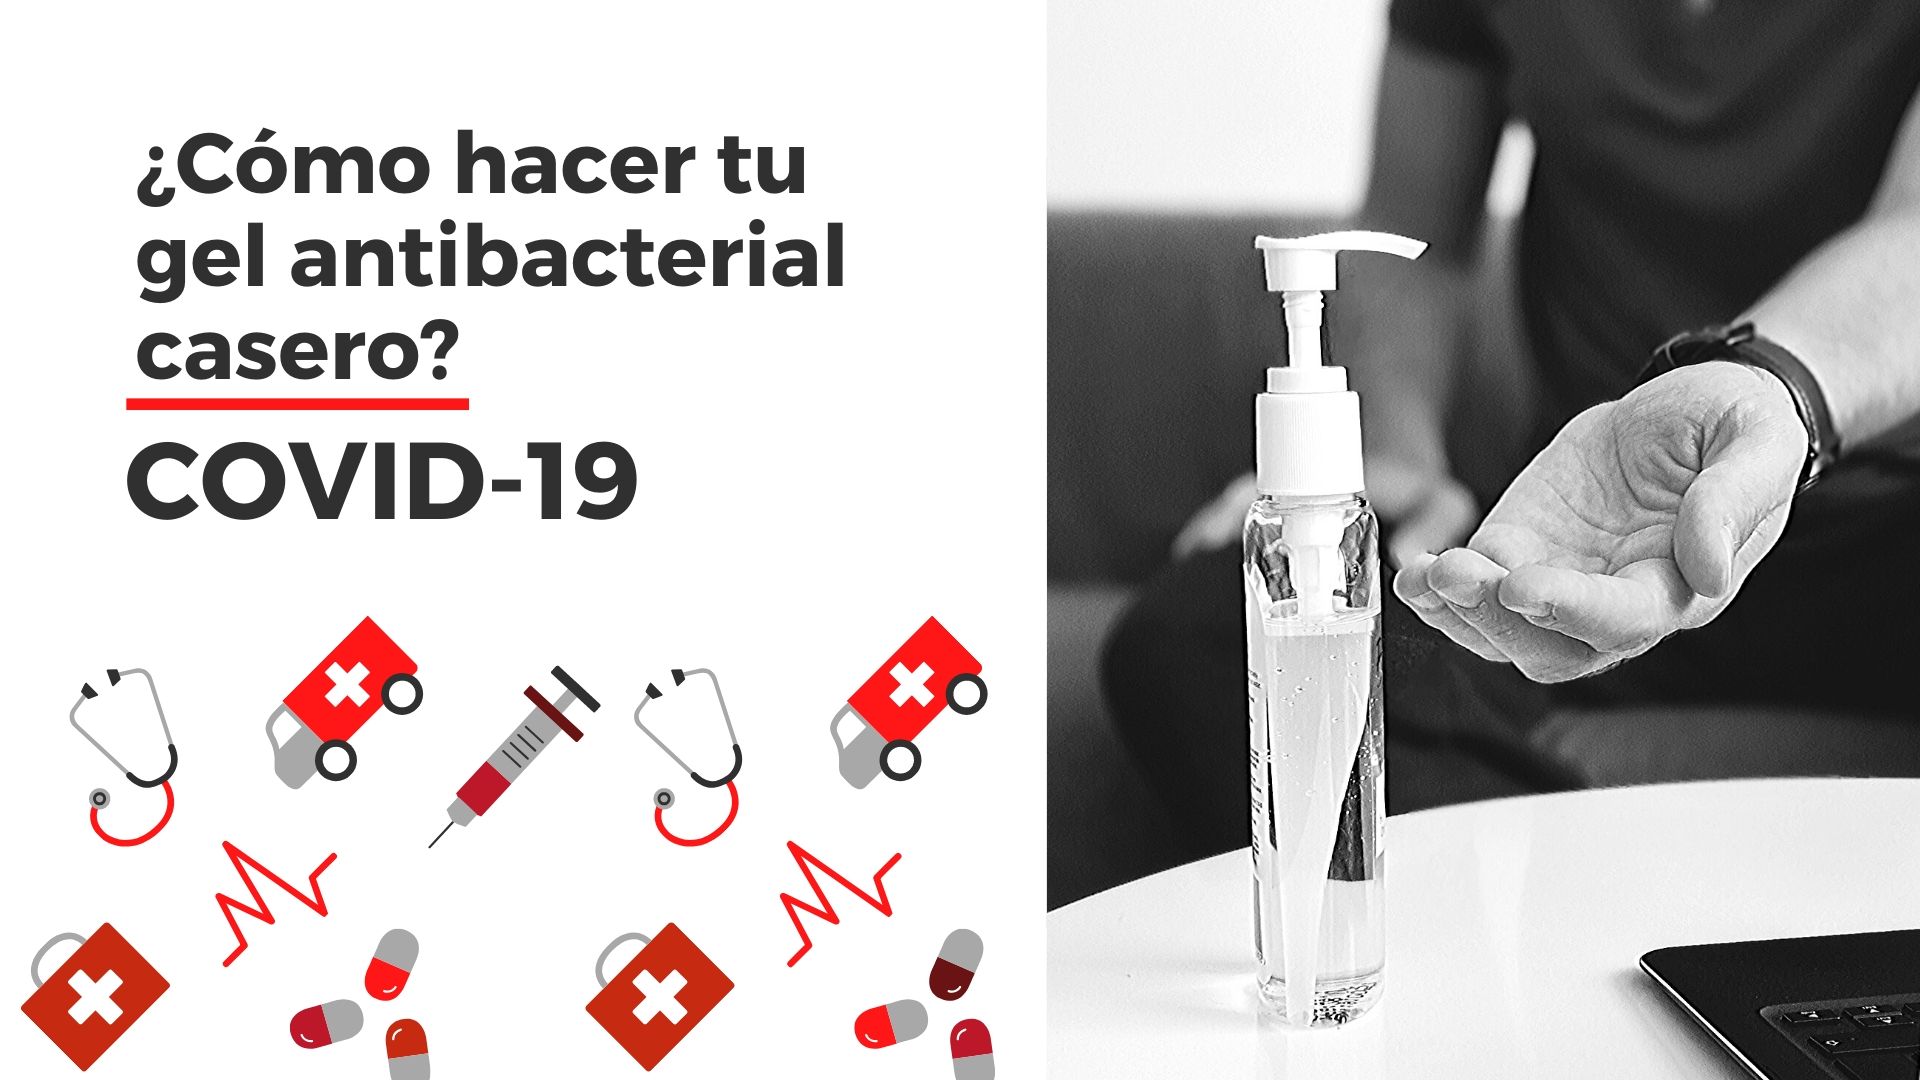 Gel antibacterial sanitizante casero: Receta de la OMS | Unión Guanajuato